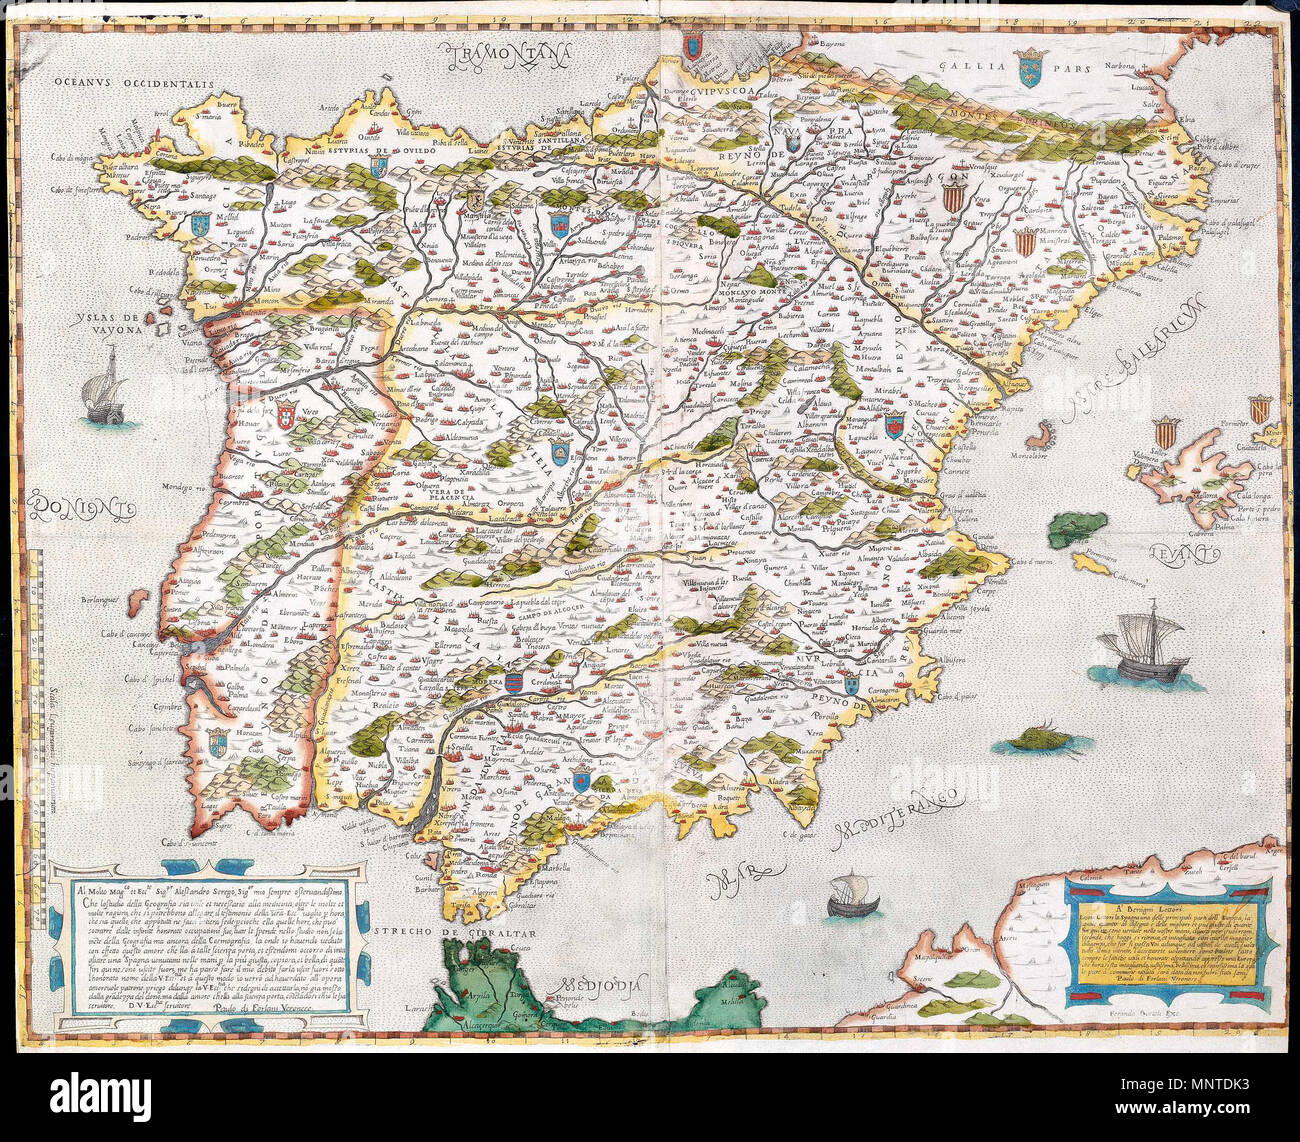 853 Mapa de España y Portugal (Forlani de Veronese) Stock Photo